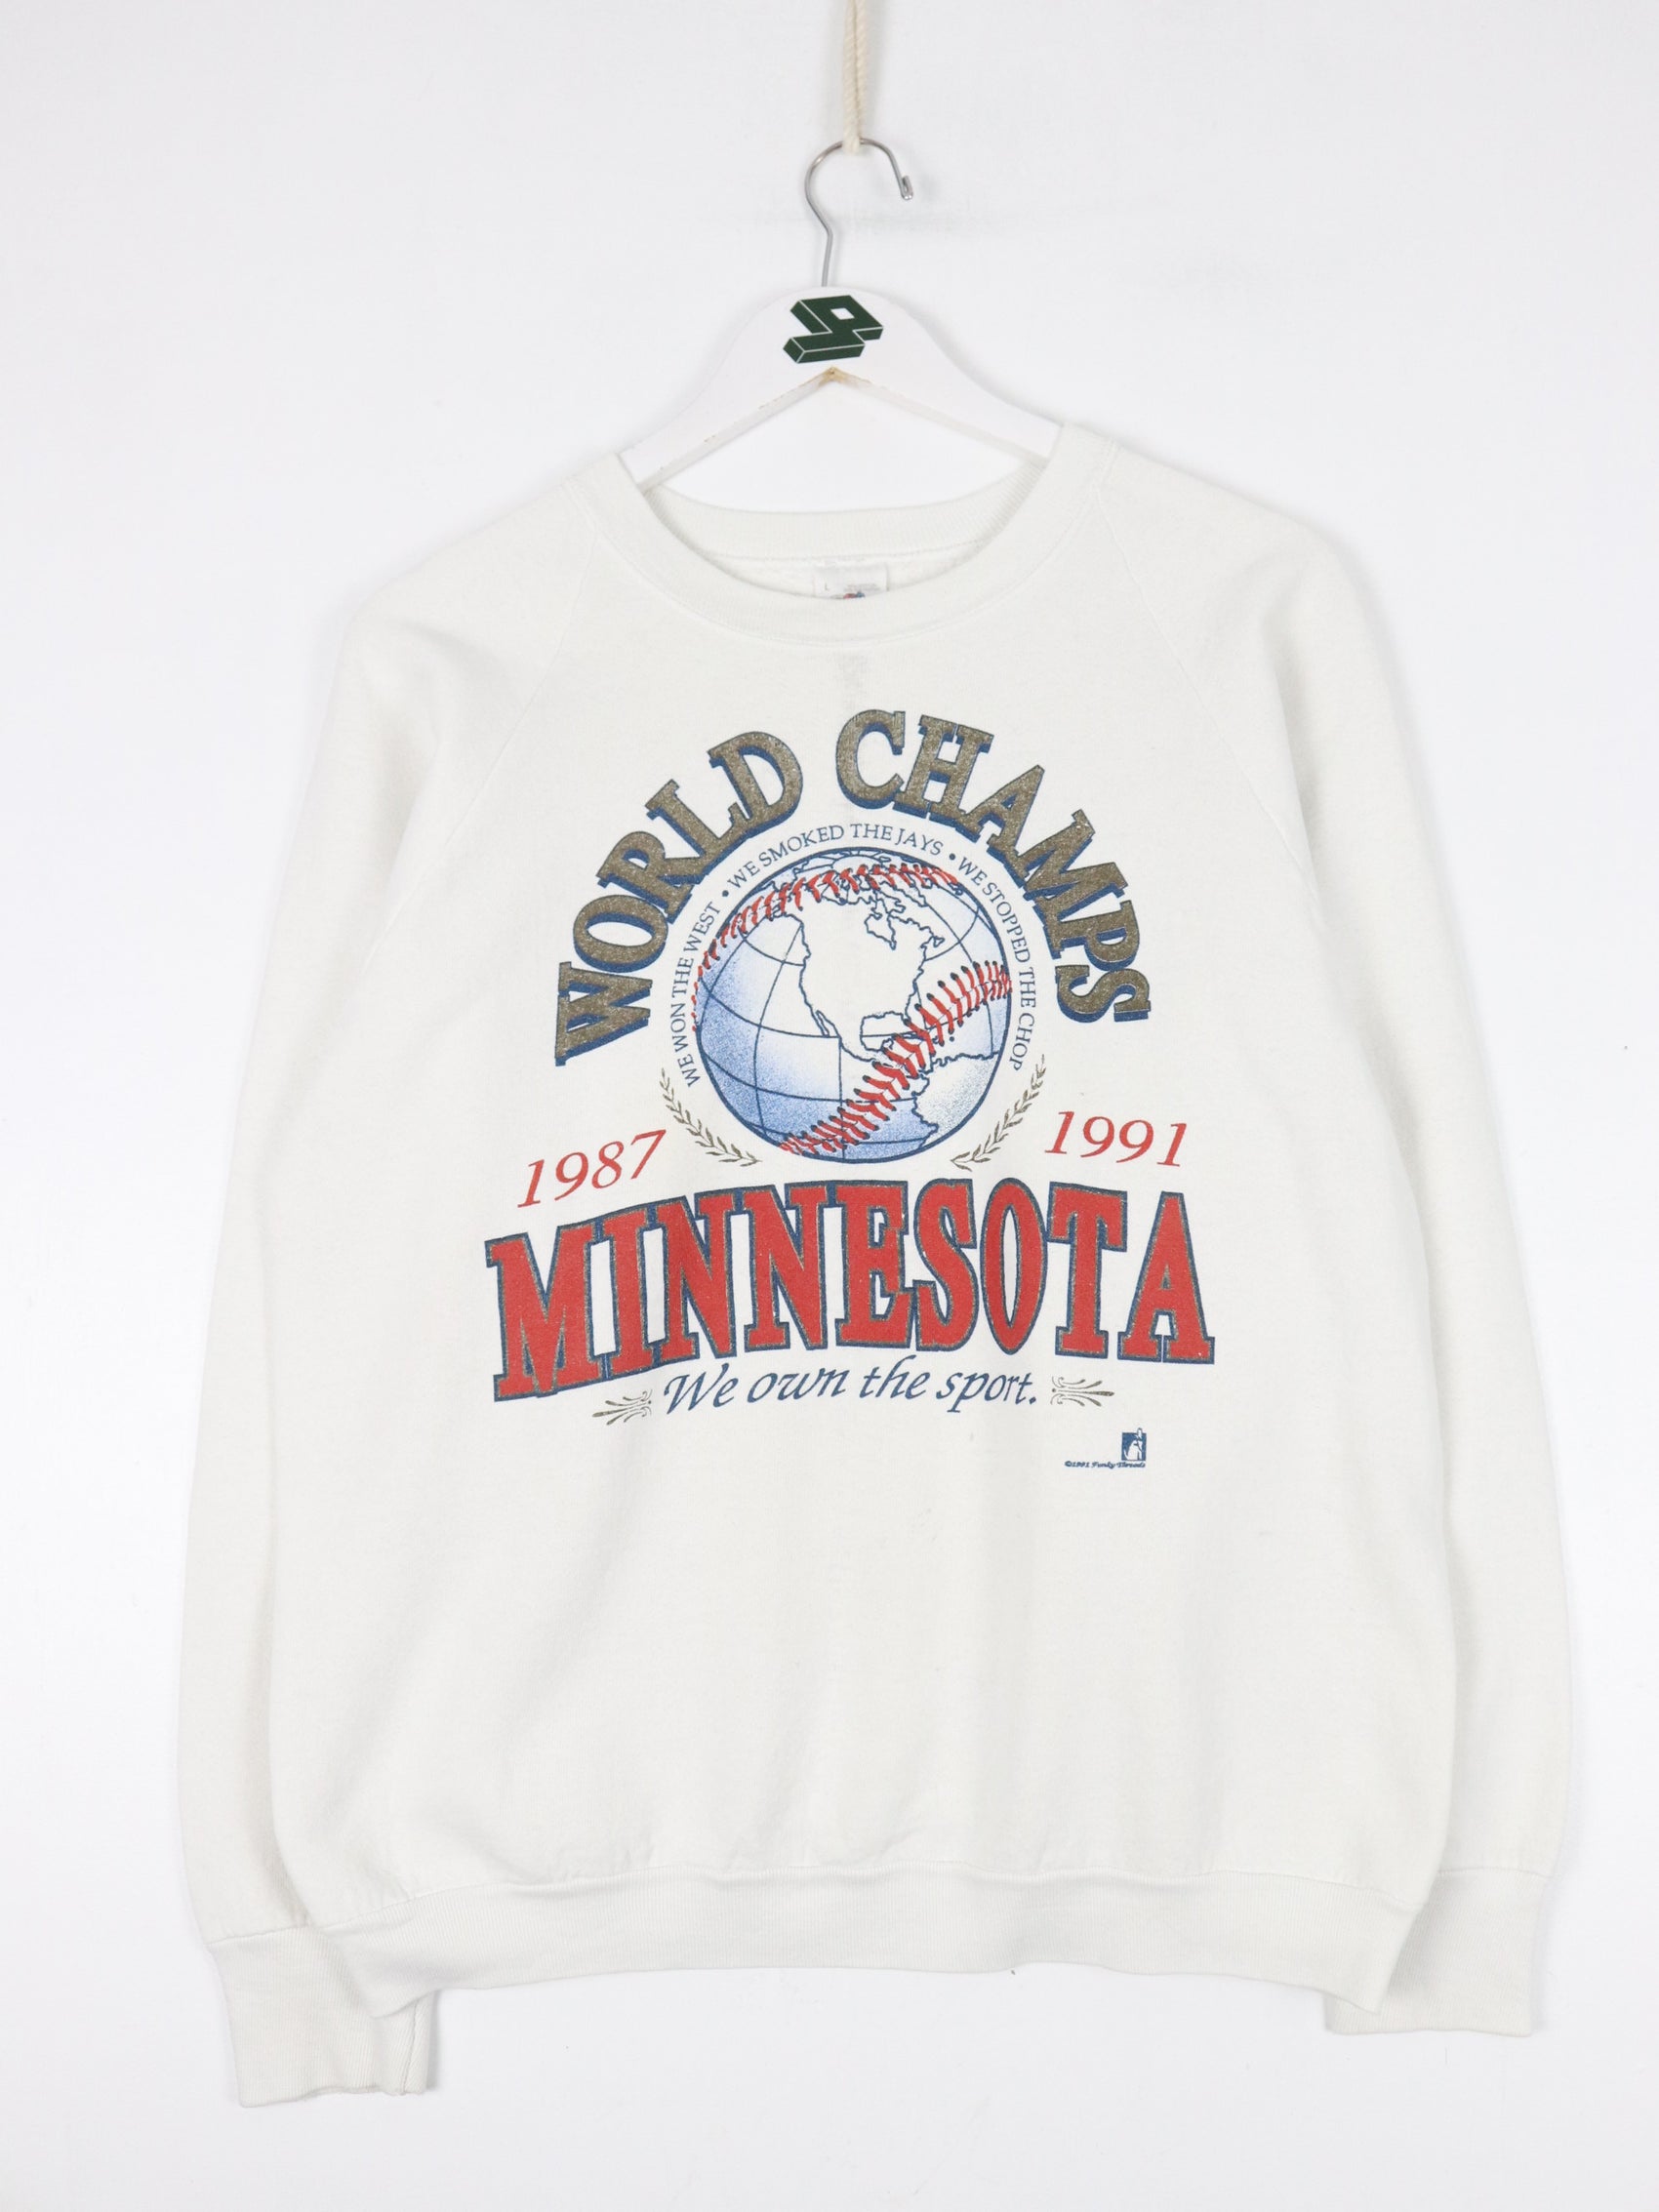 Vintage Minnesota Twins Sweatshirt Fits Mens Small White 90s MLB